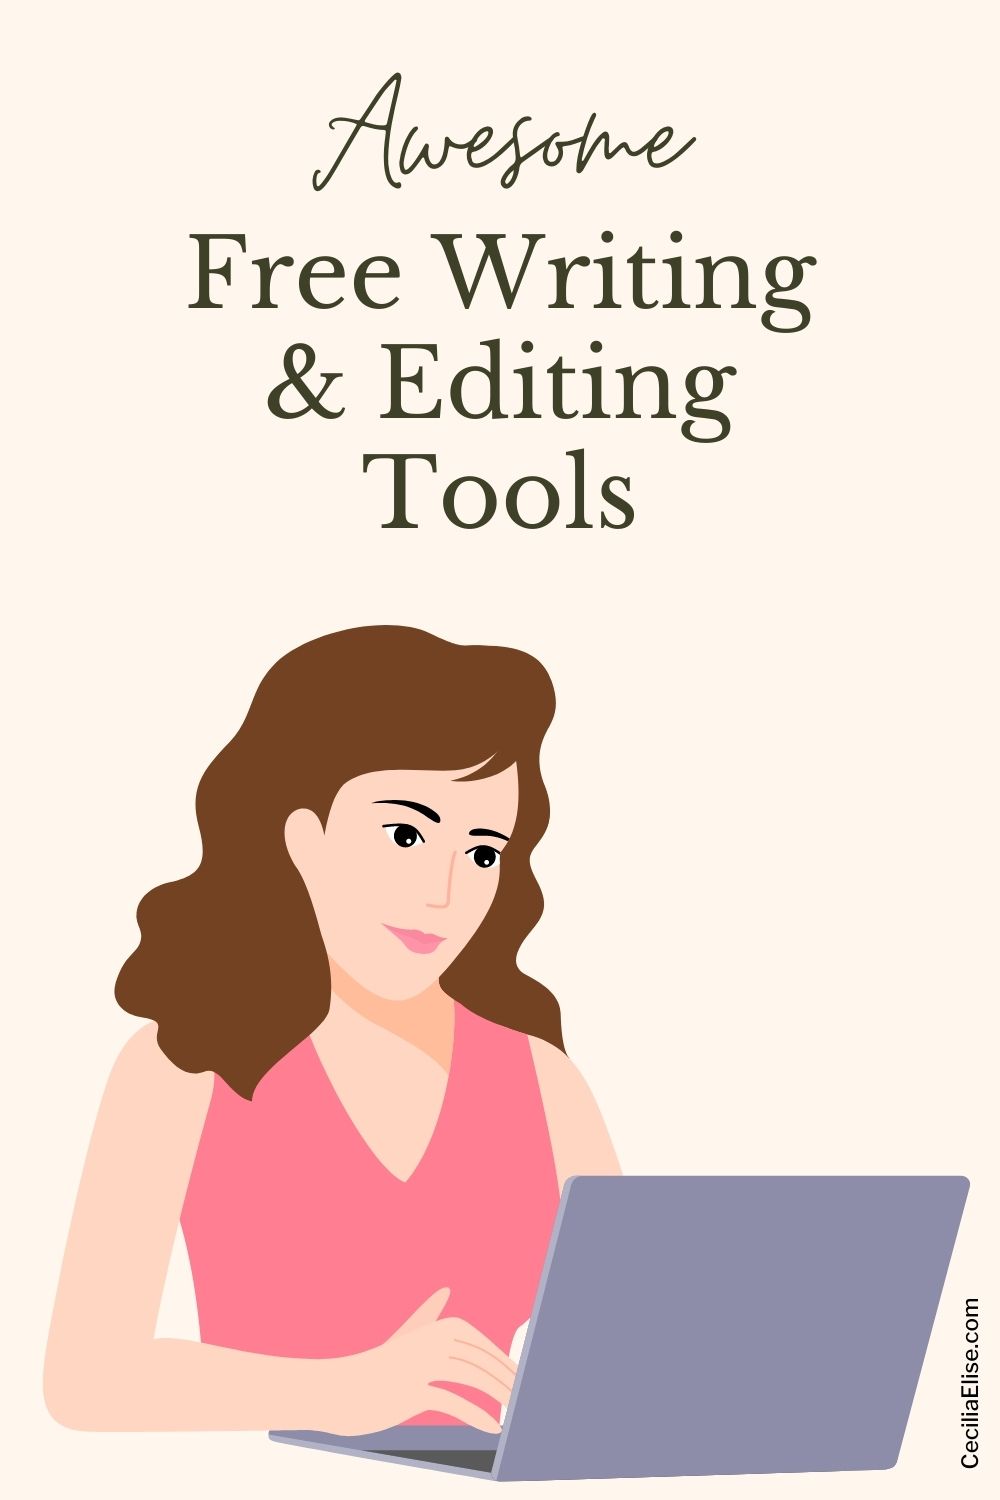 Free Writing & Editing Tools